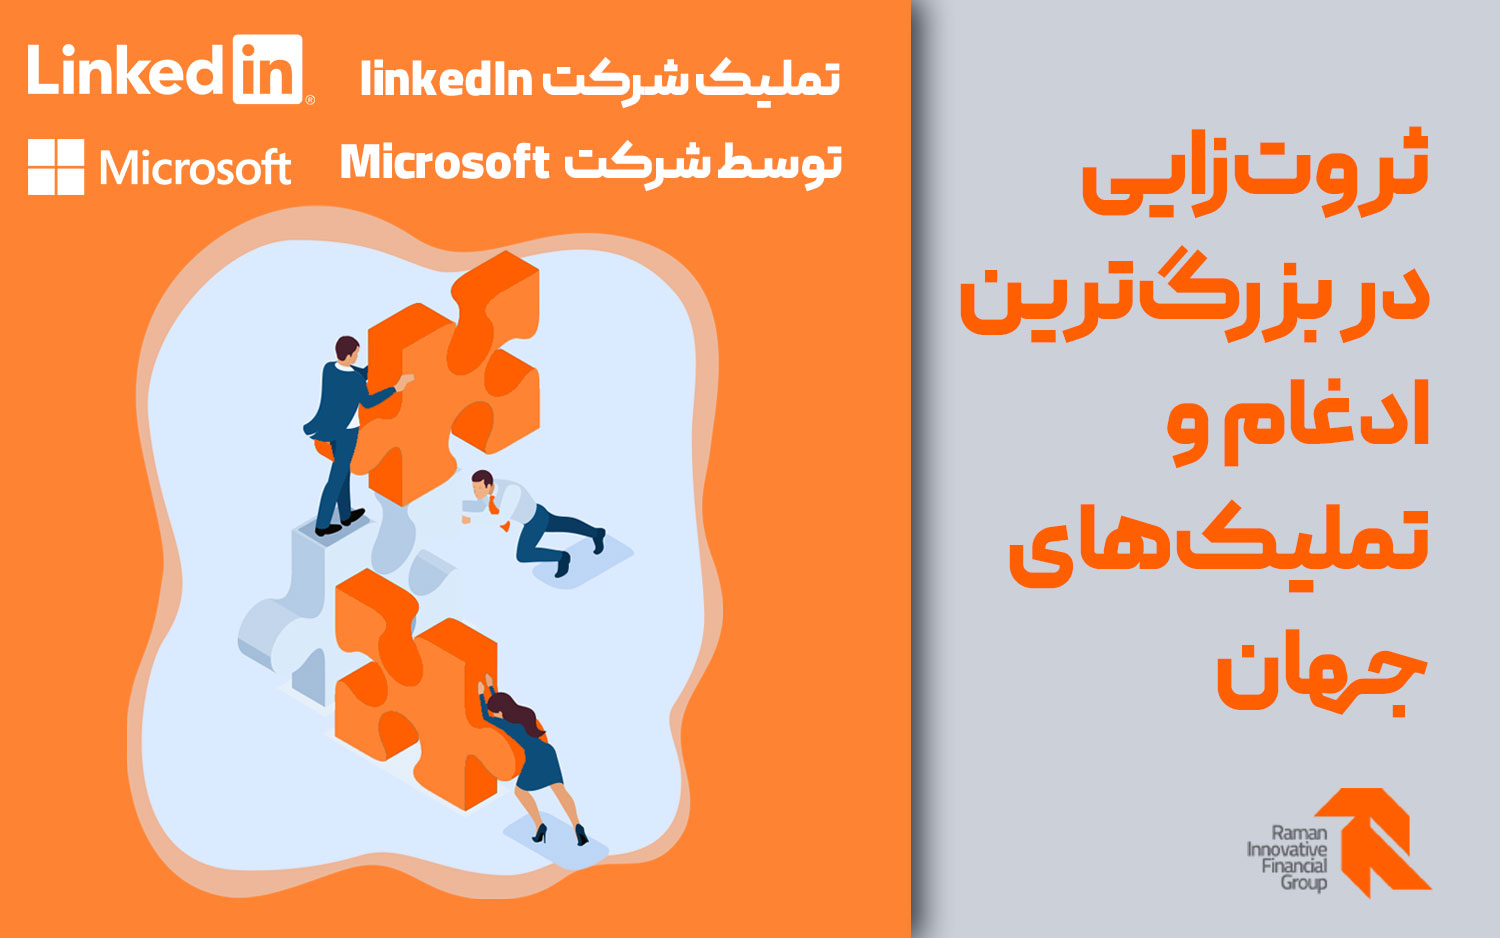 تملیک شرکت linkedIn توسط شرکت Microsoft